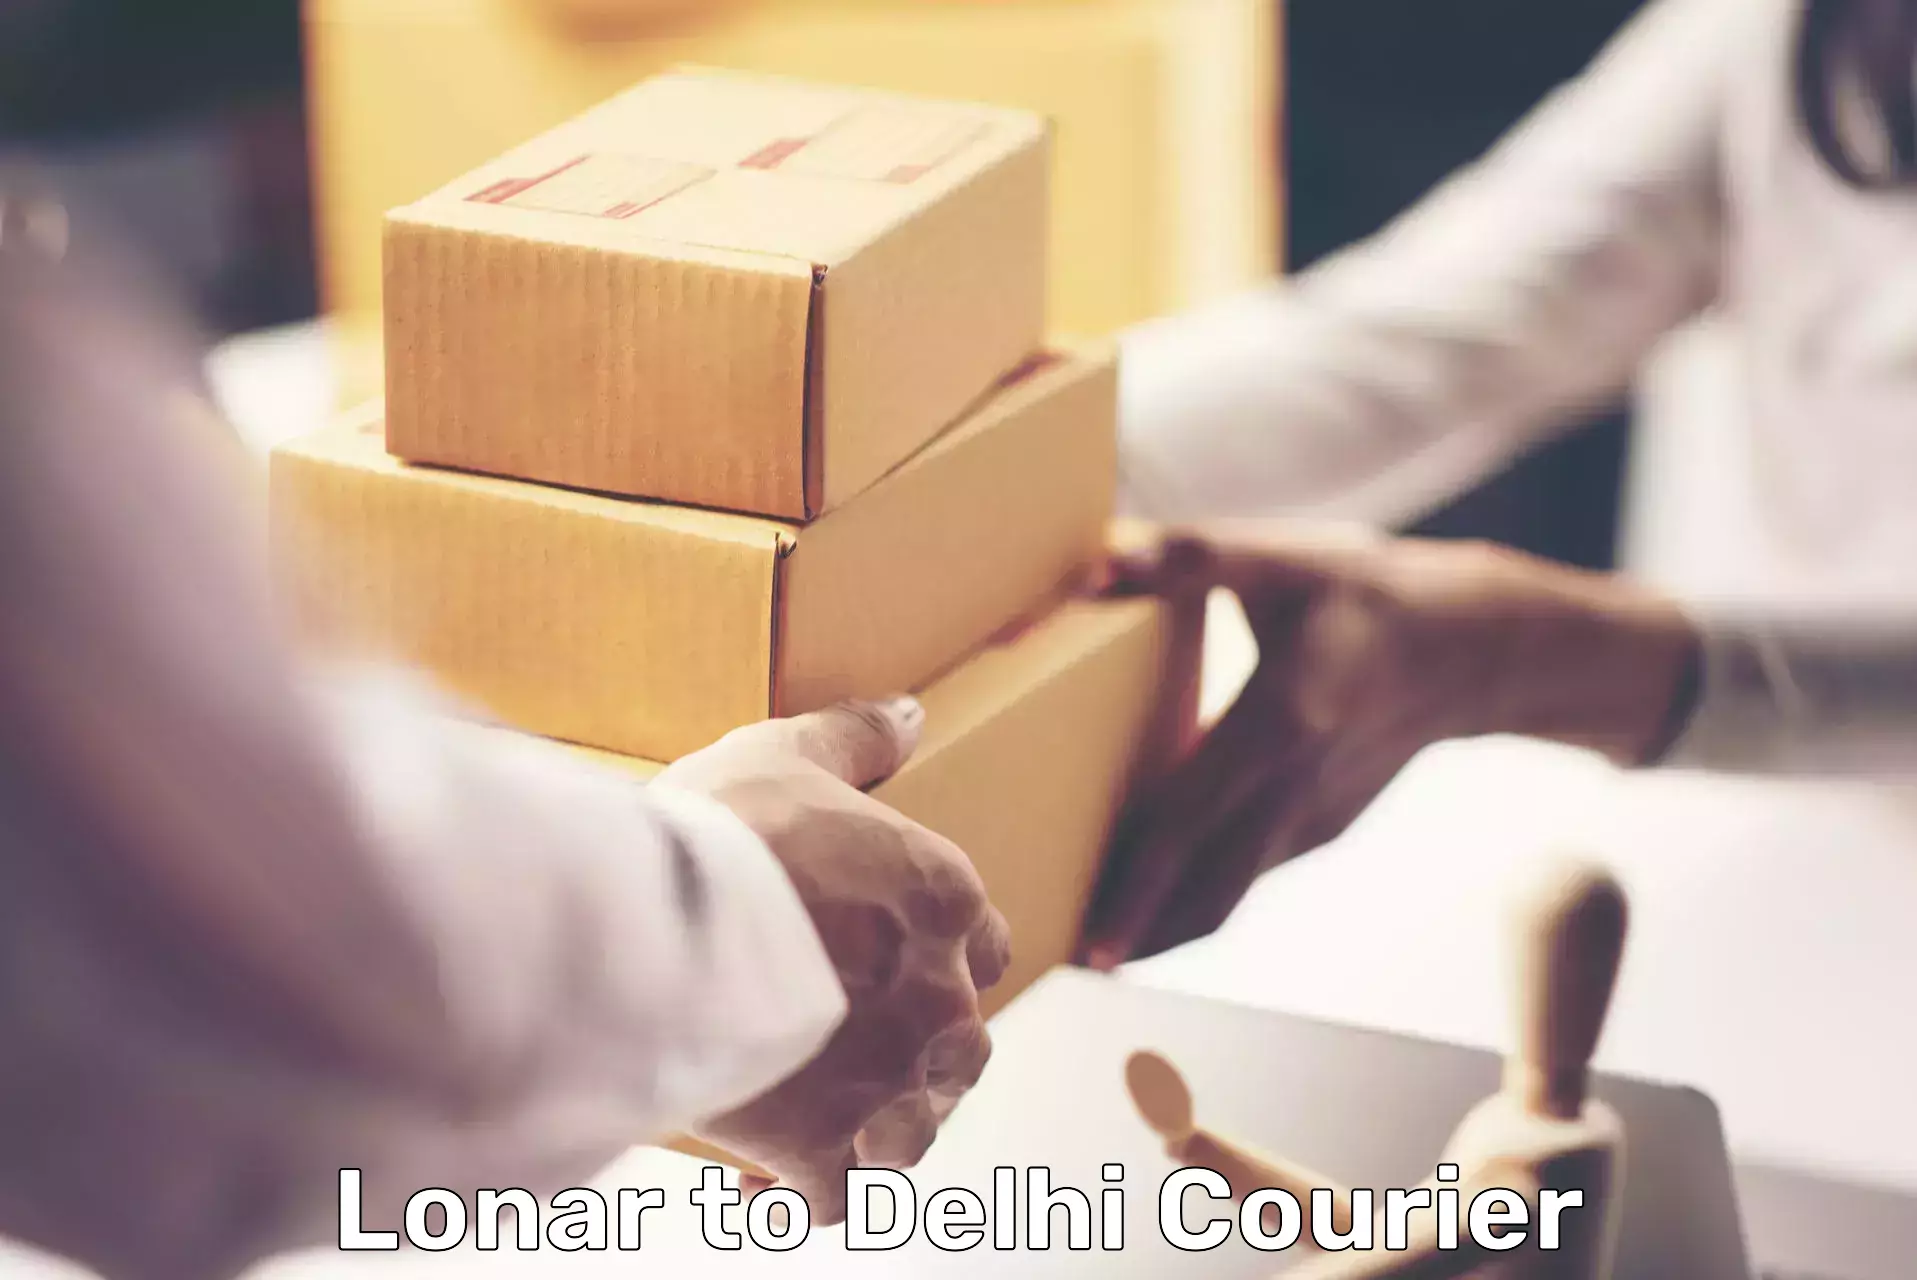 High-capacity parcel service Lonar to Delhi